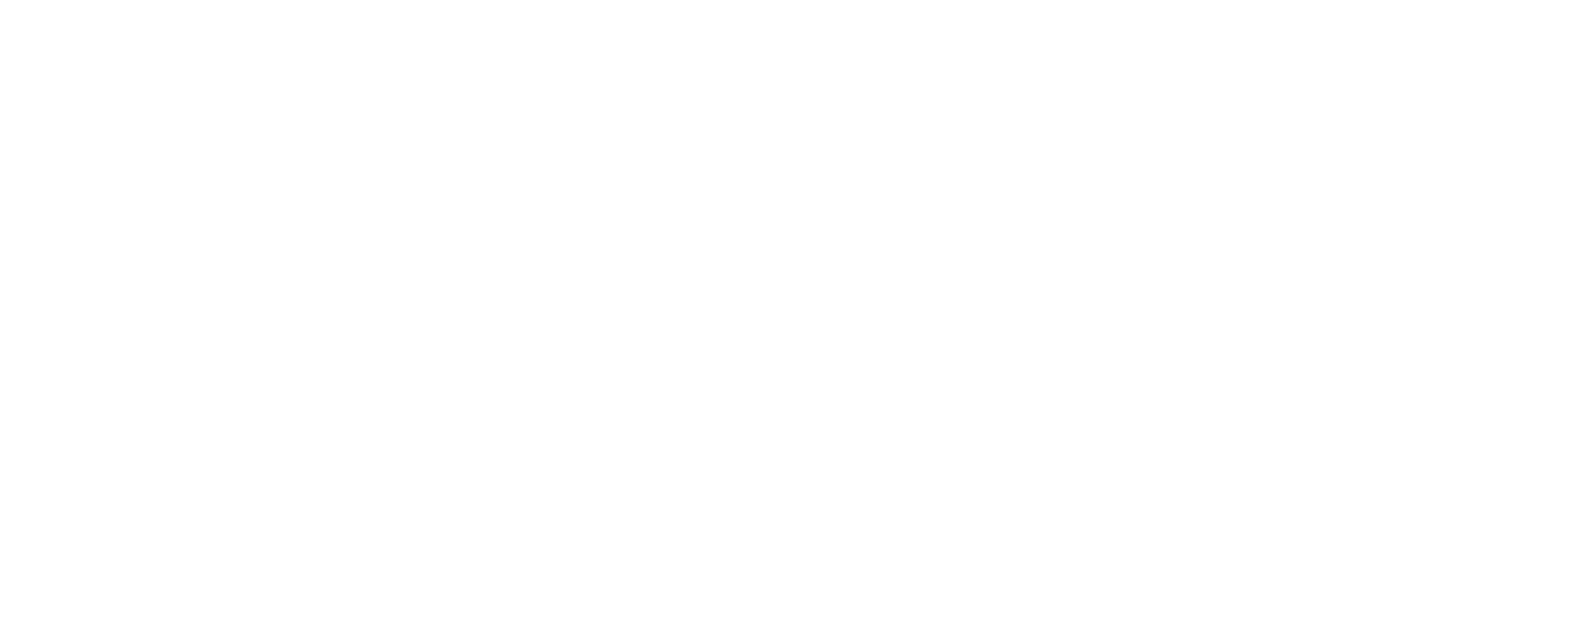 Freshpet logo large for dark backgrounds (transparent PNG)